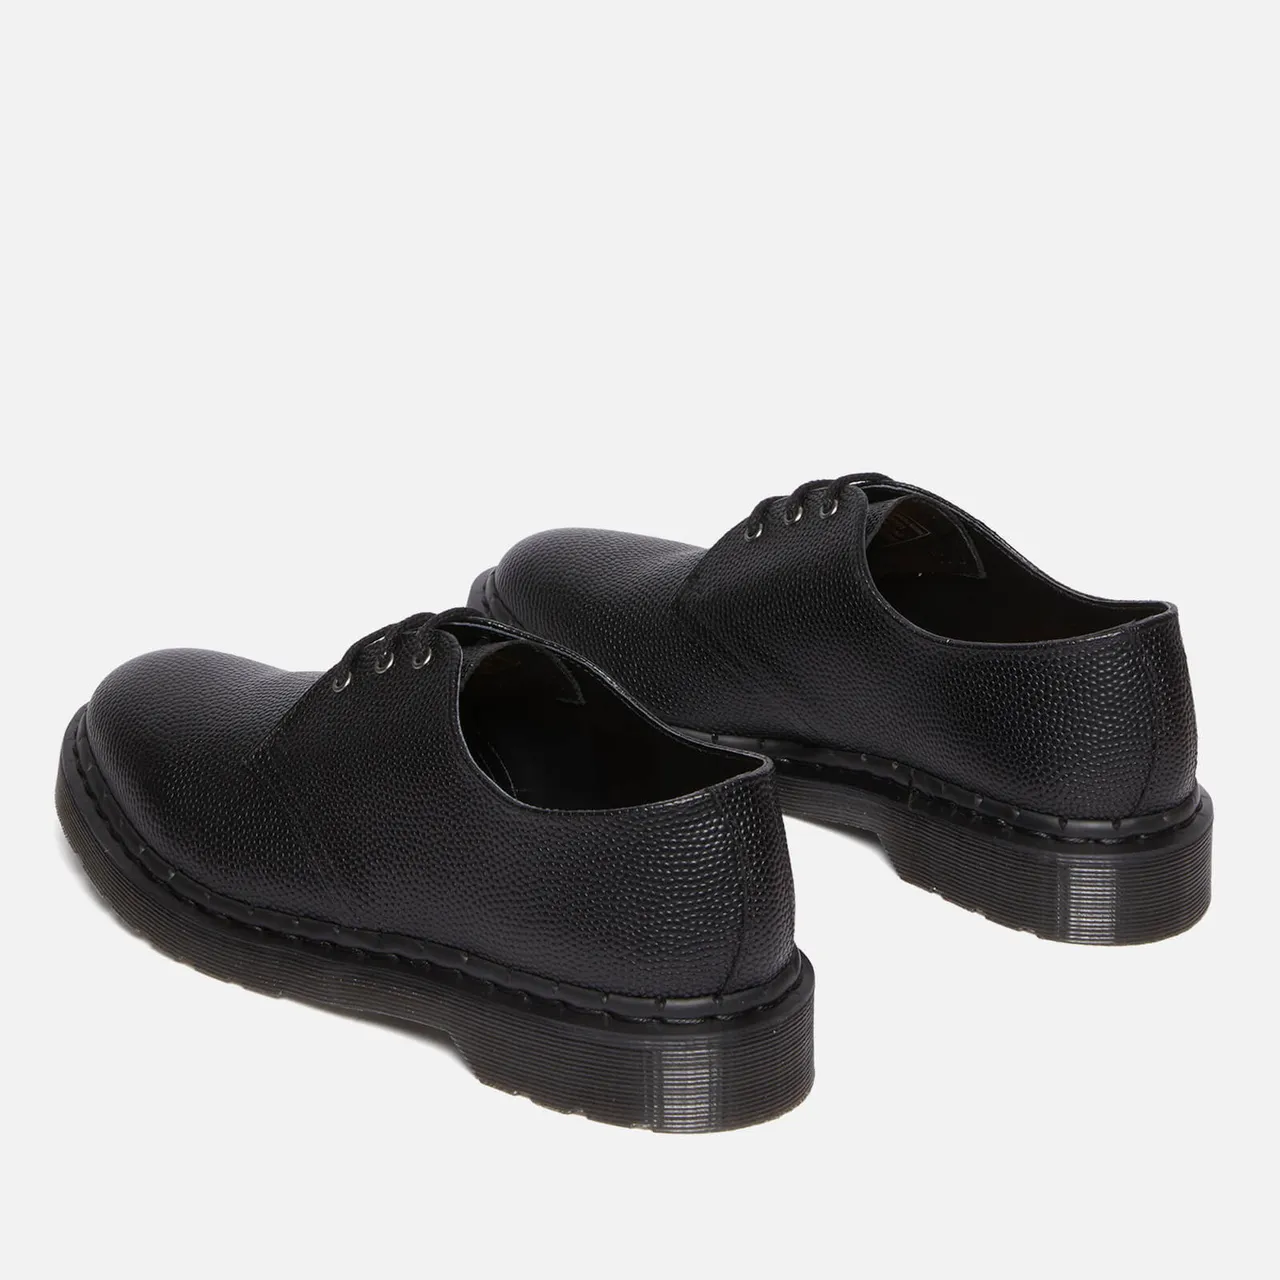 Dr. Martens Men's 1461 Pebbled Leather Shoes - UK